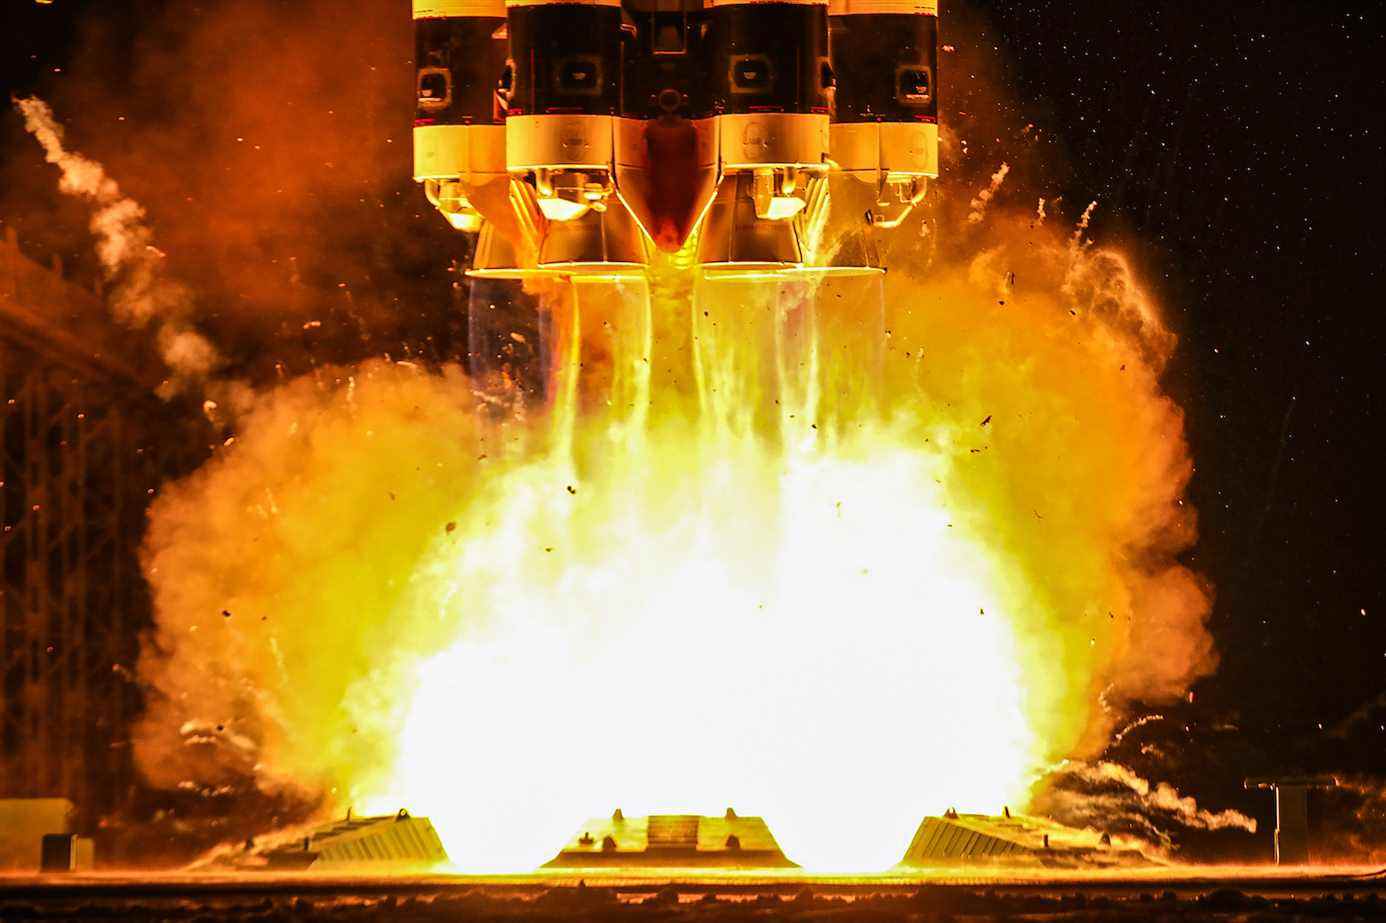 BAIKONUR, KAZAKHSTAN, 13 DÉCEMBRE 2021 : La fusée Proton-M avec l'étage supérieur Breeze-M transportant les satellites de télécommunications Express-AMU3 et Express-AMU7 décolle du cosmodrome de Baïkonour.  Proton-M va placer les deux satellites de la Russian Satellite Communication Company (RSCC) en orbite géostationnaire.  Bureau de presse de Roscosmos/TASS (Photo par le bureau de presse de RoscosmosTASS via Getty Images)